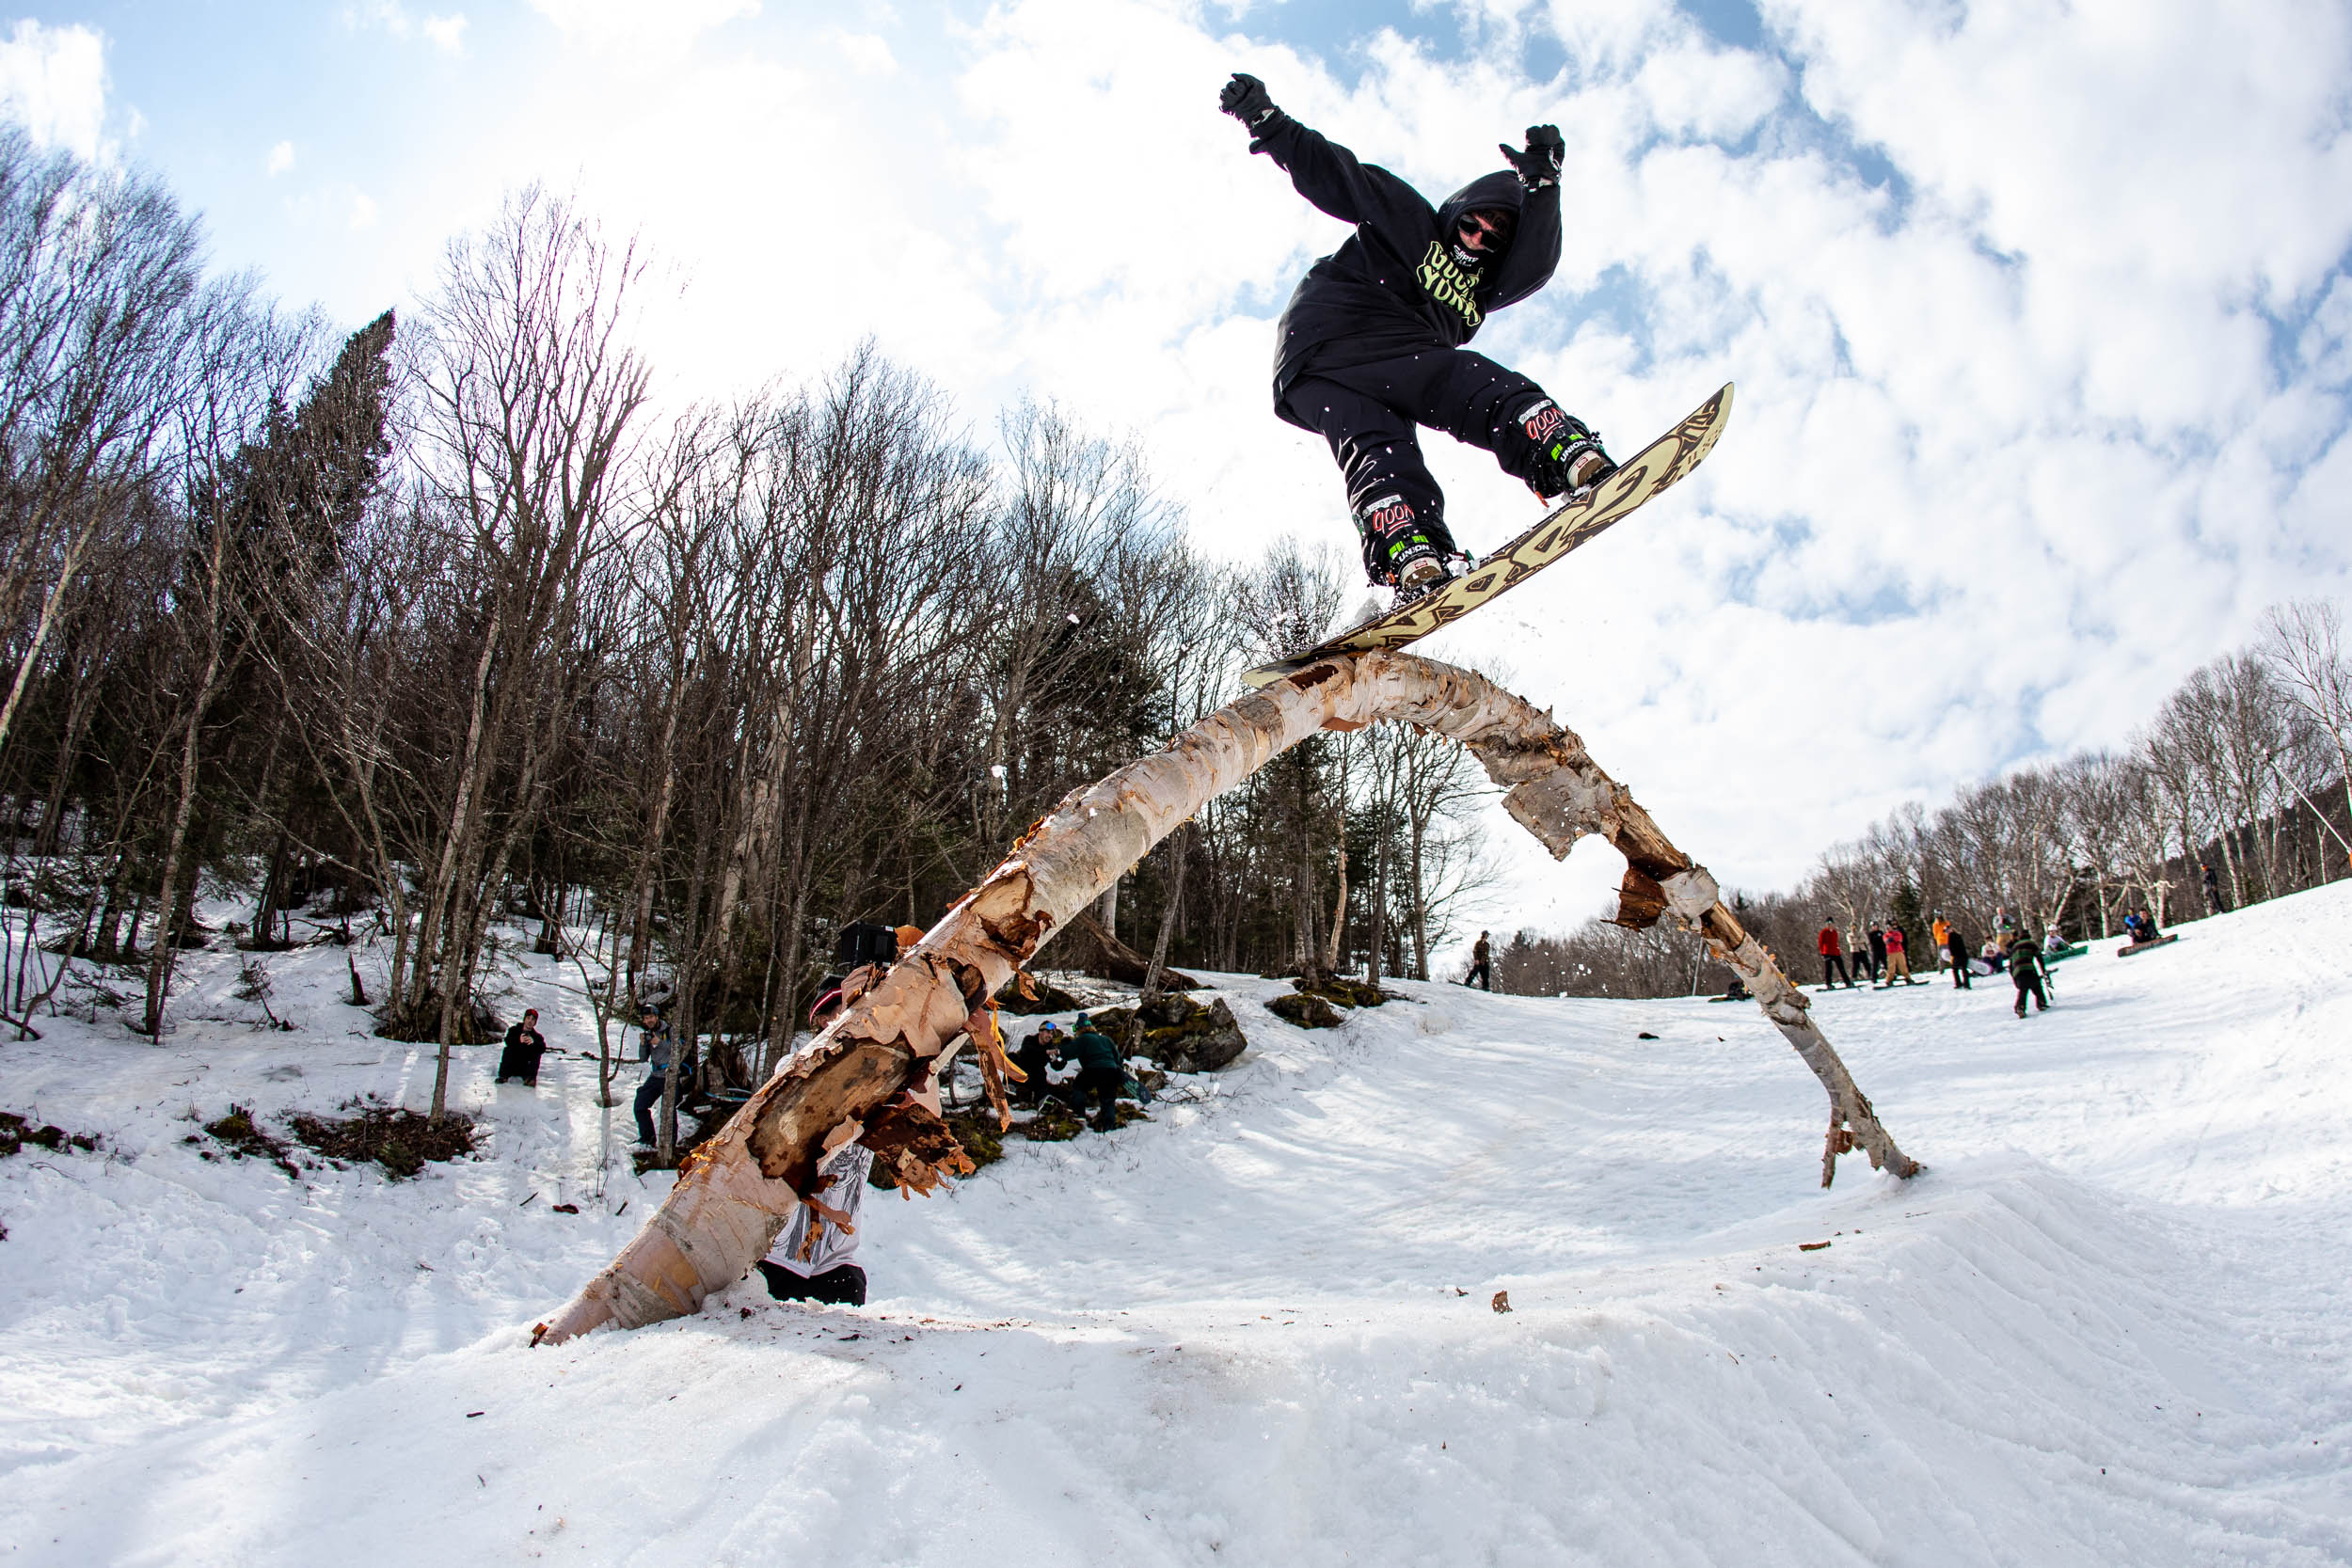 Lucas Magoon snowboarding